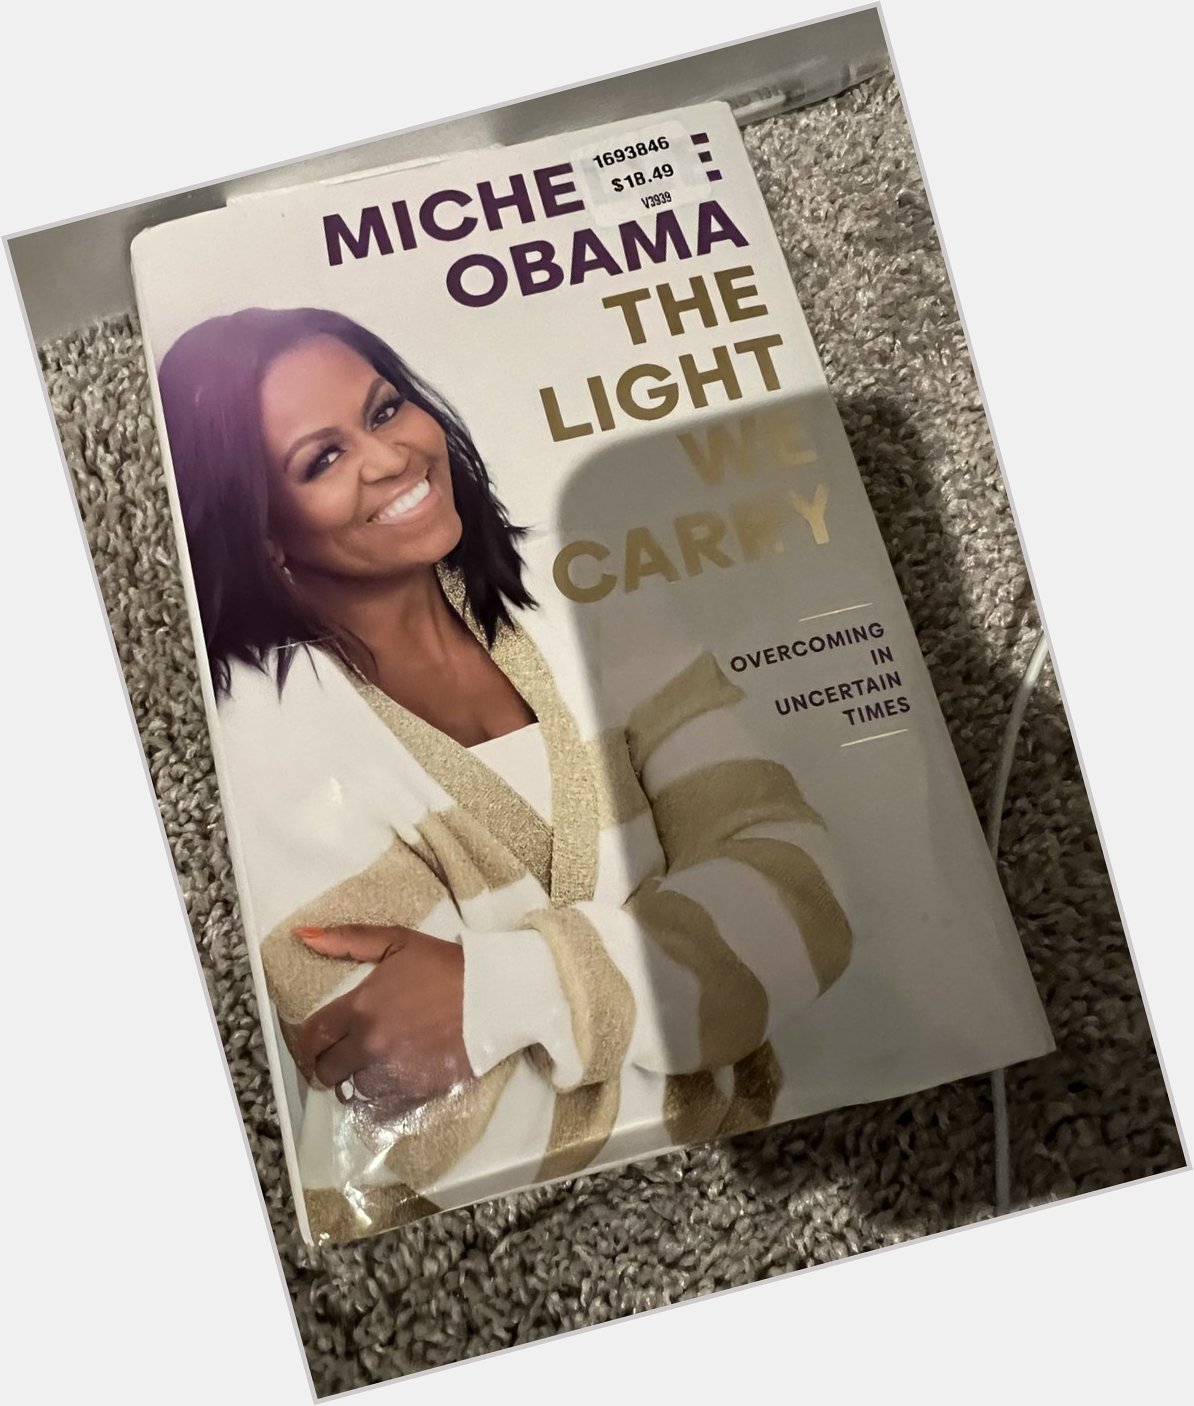   Happy birthday Michelle Obama 